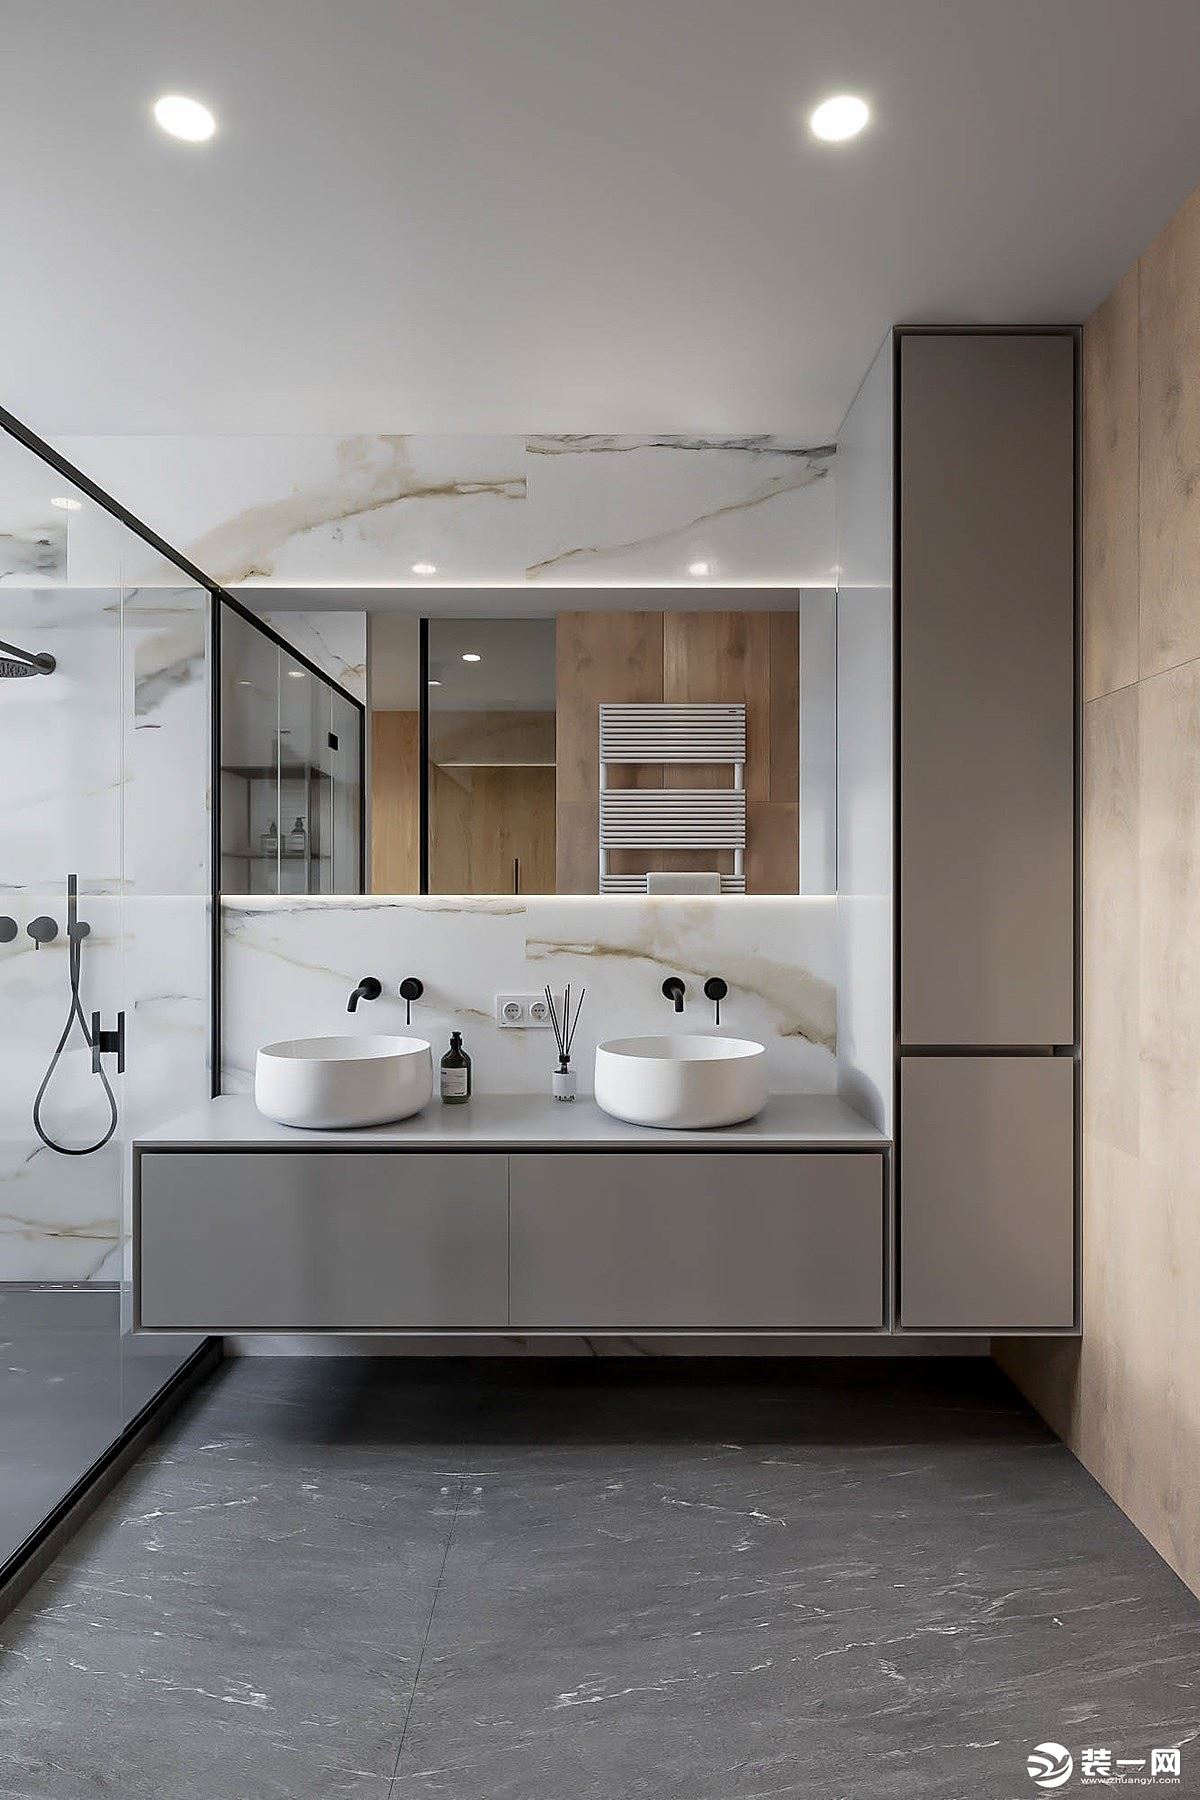 卫浴间的储物柜悬挂在墙上，更方便卫浴间的清洁；淋浴间用玻璃门隔断，防止水花溅出。